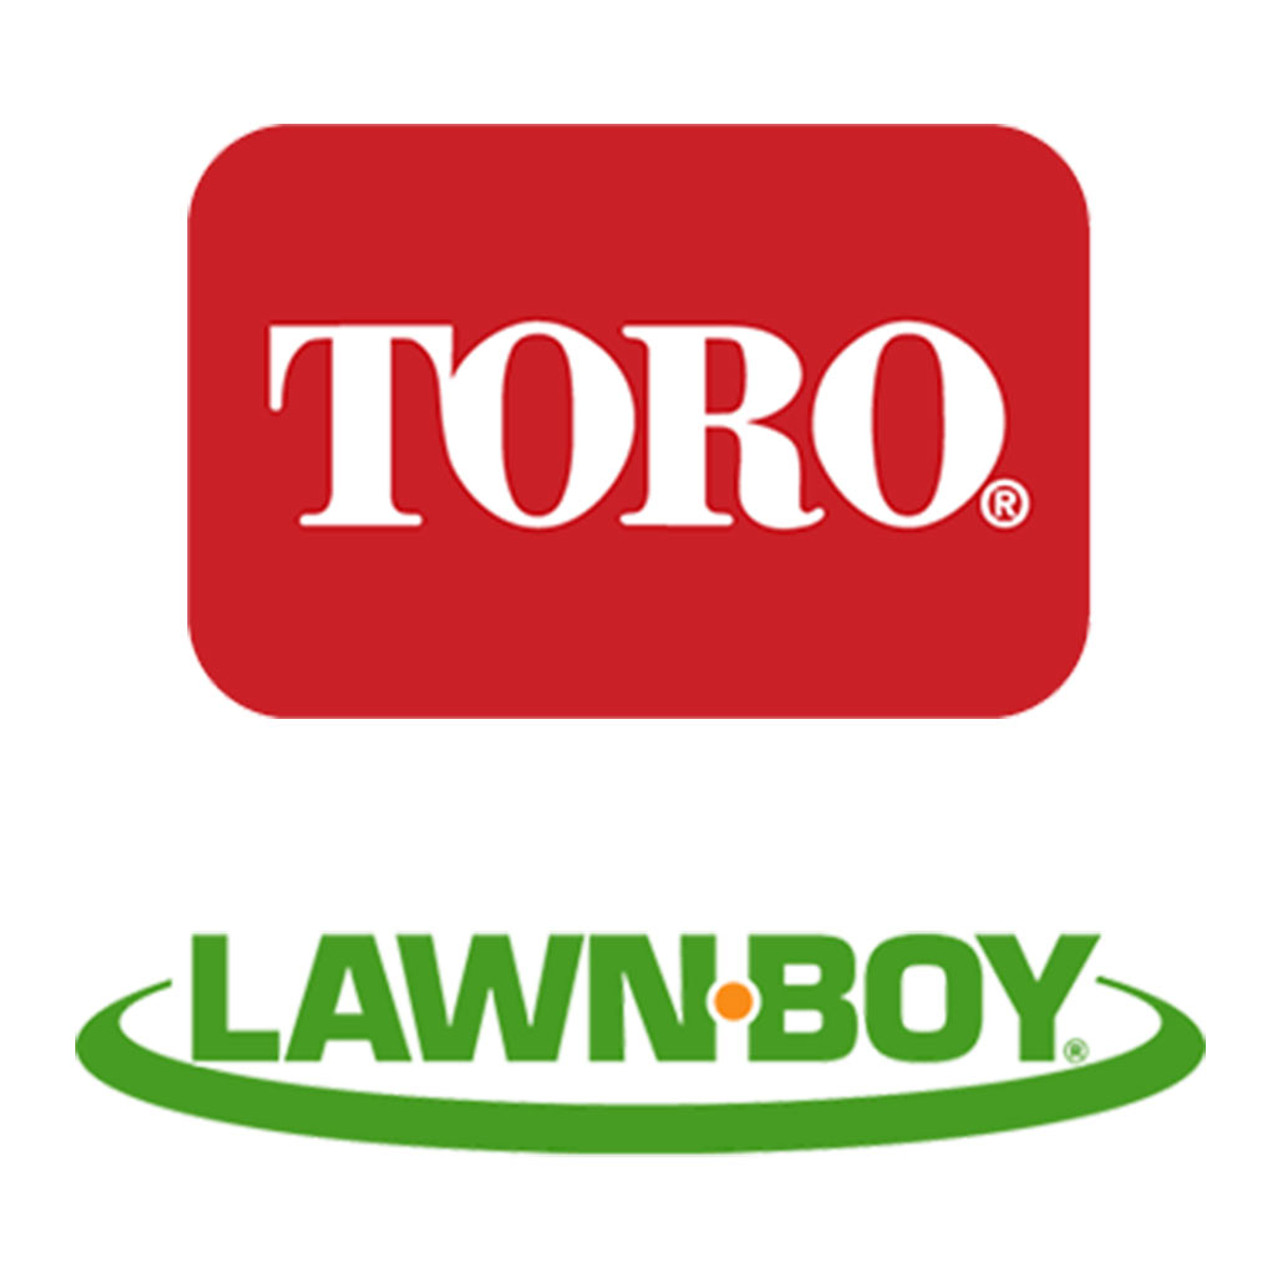 Toro Lawn-Boy 237-125 Grommet